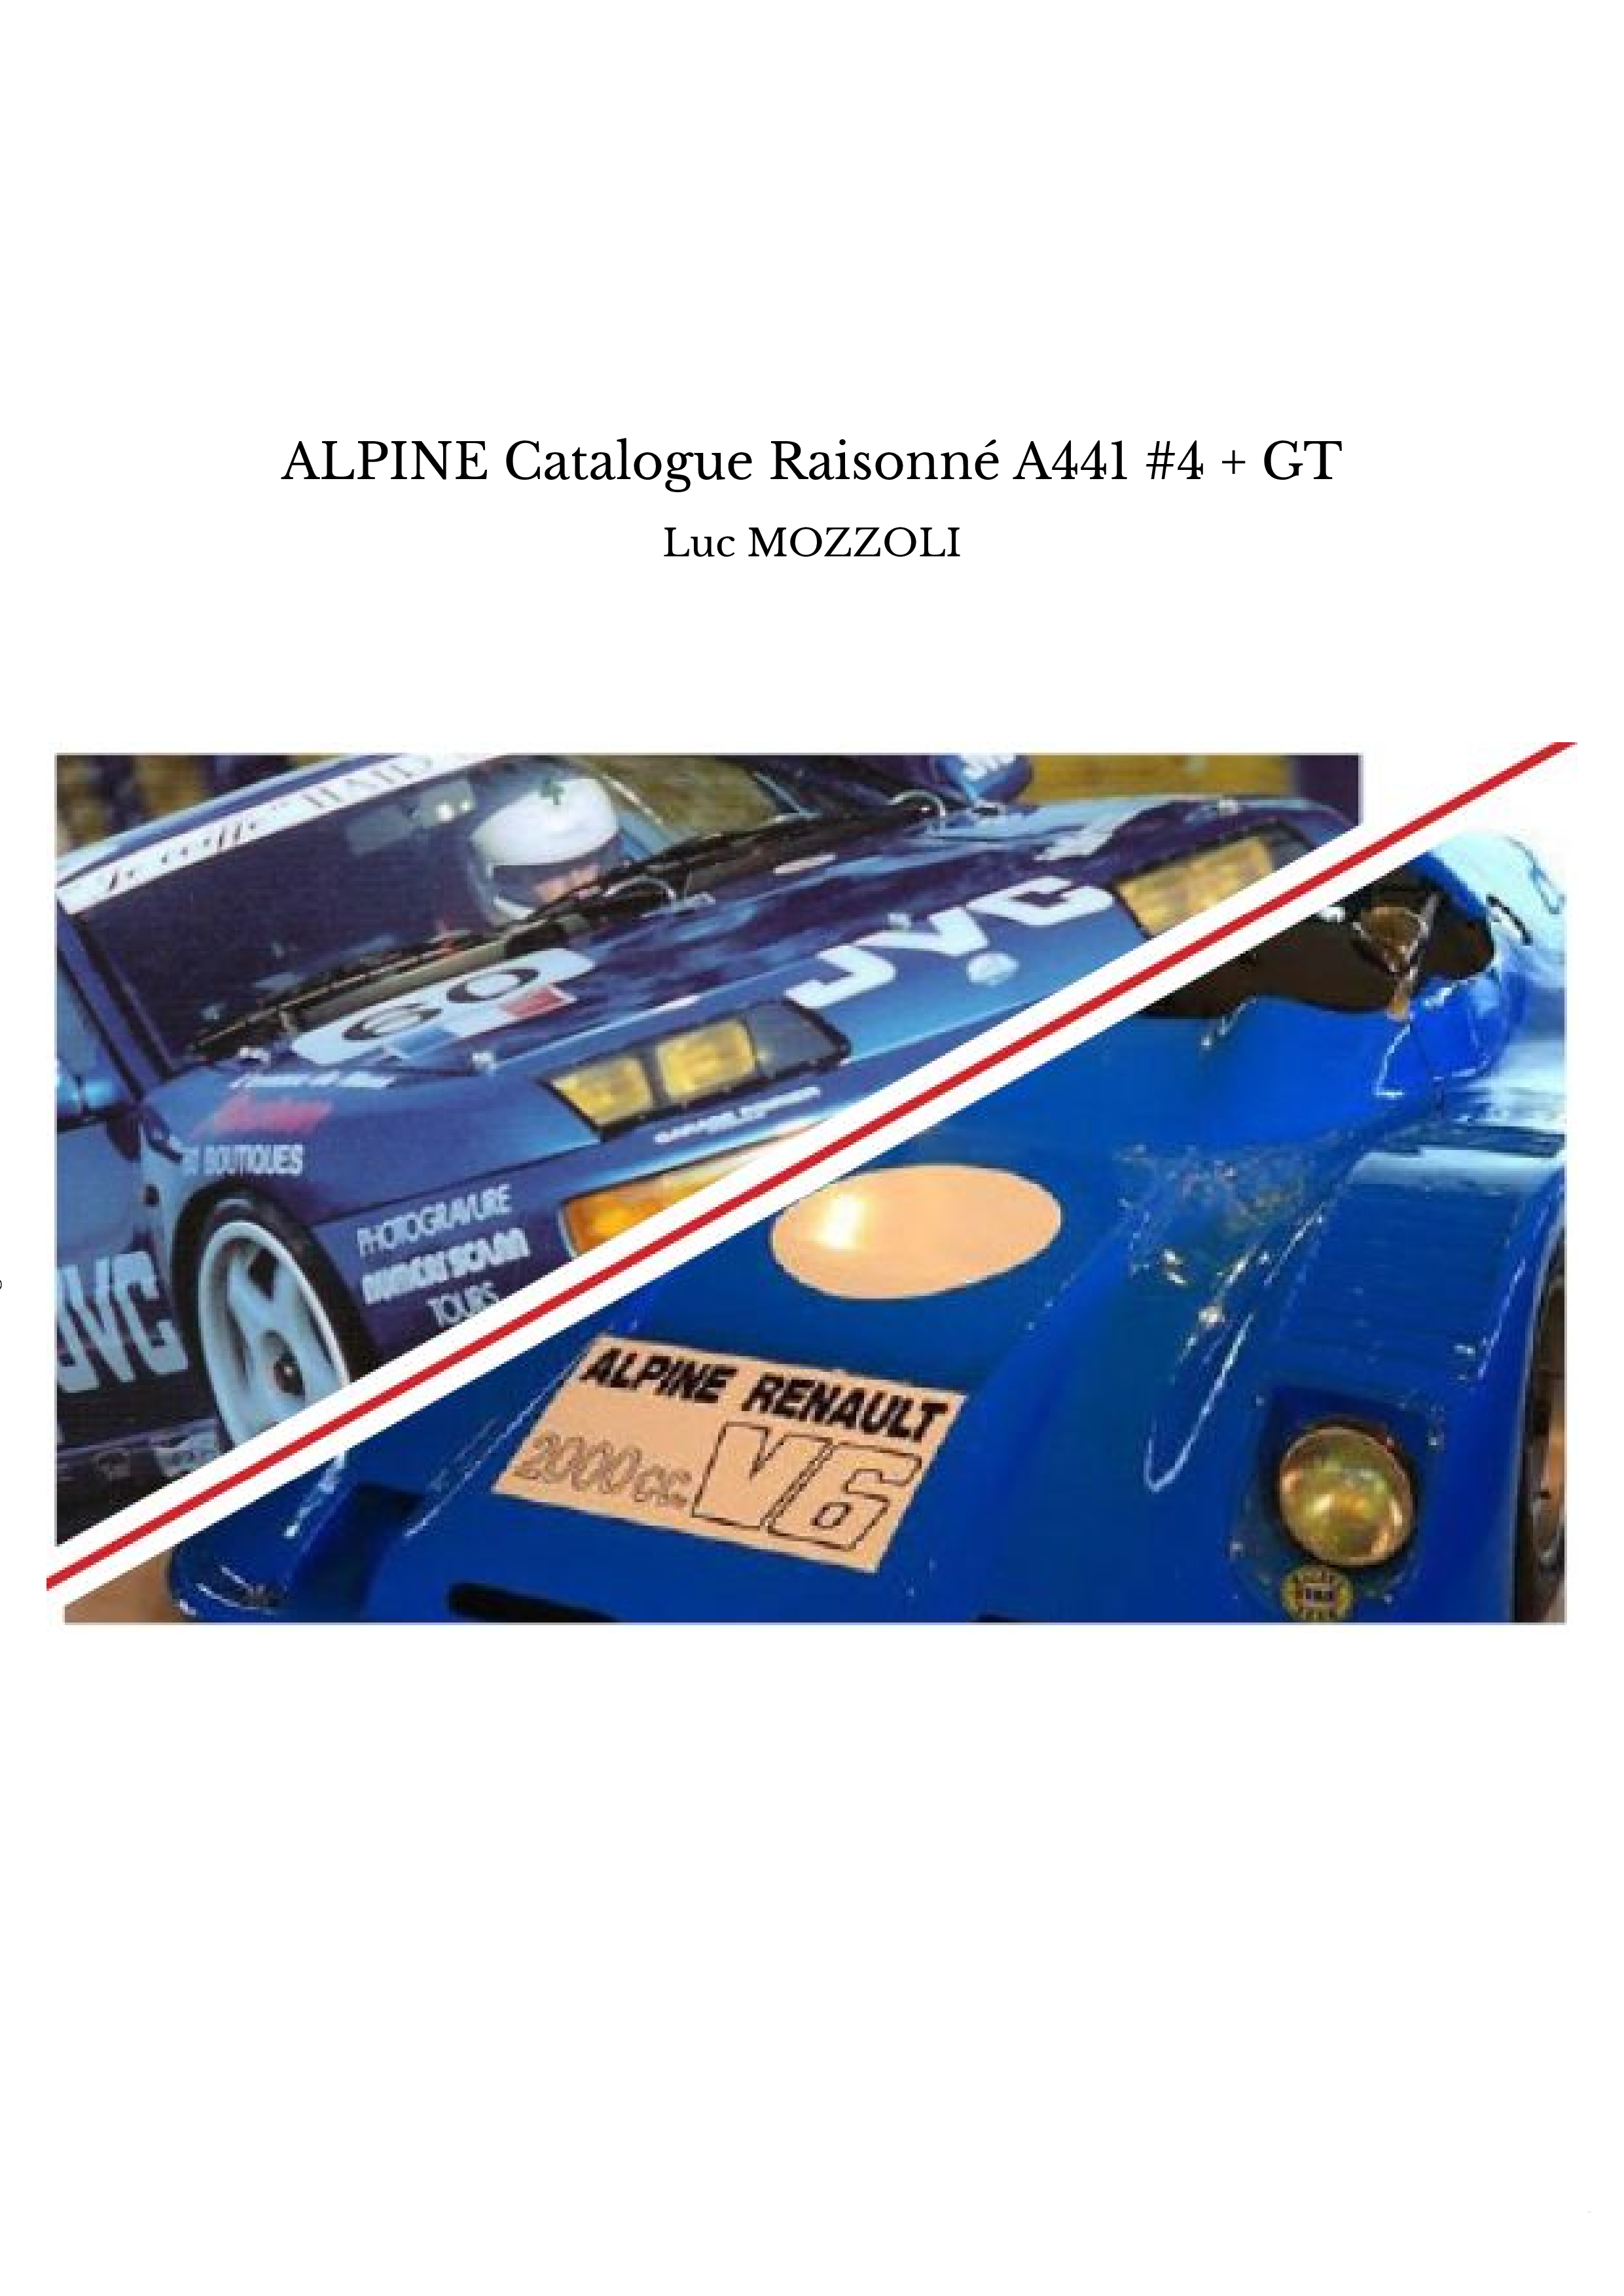 ALPINE Catalogue Raisonné A441 #4 + GT